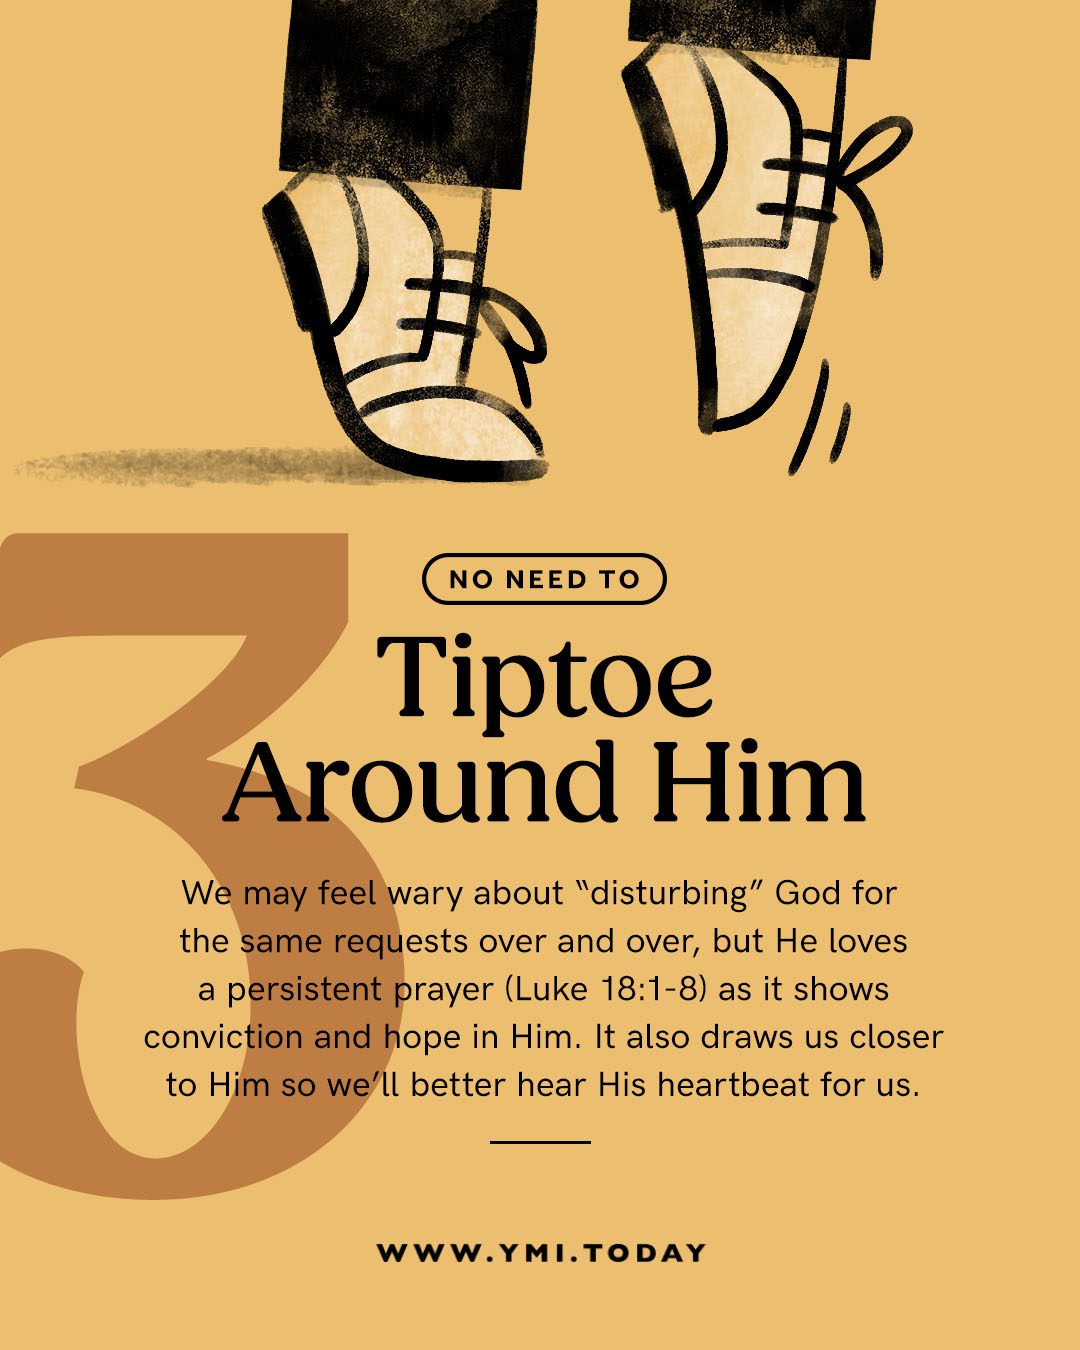 Illustration of feet tiptoe-ing